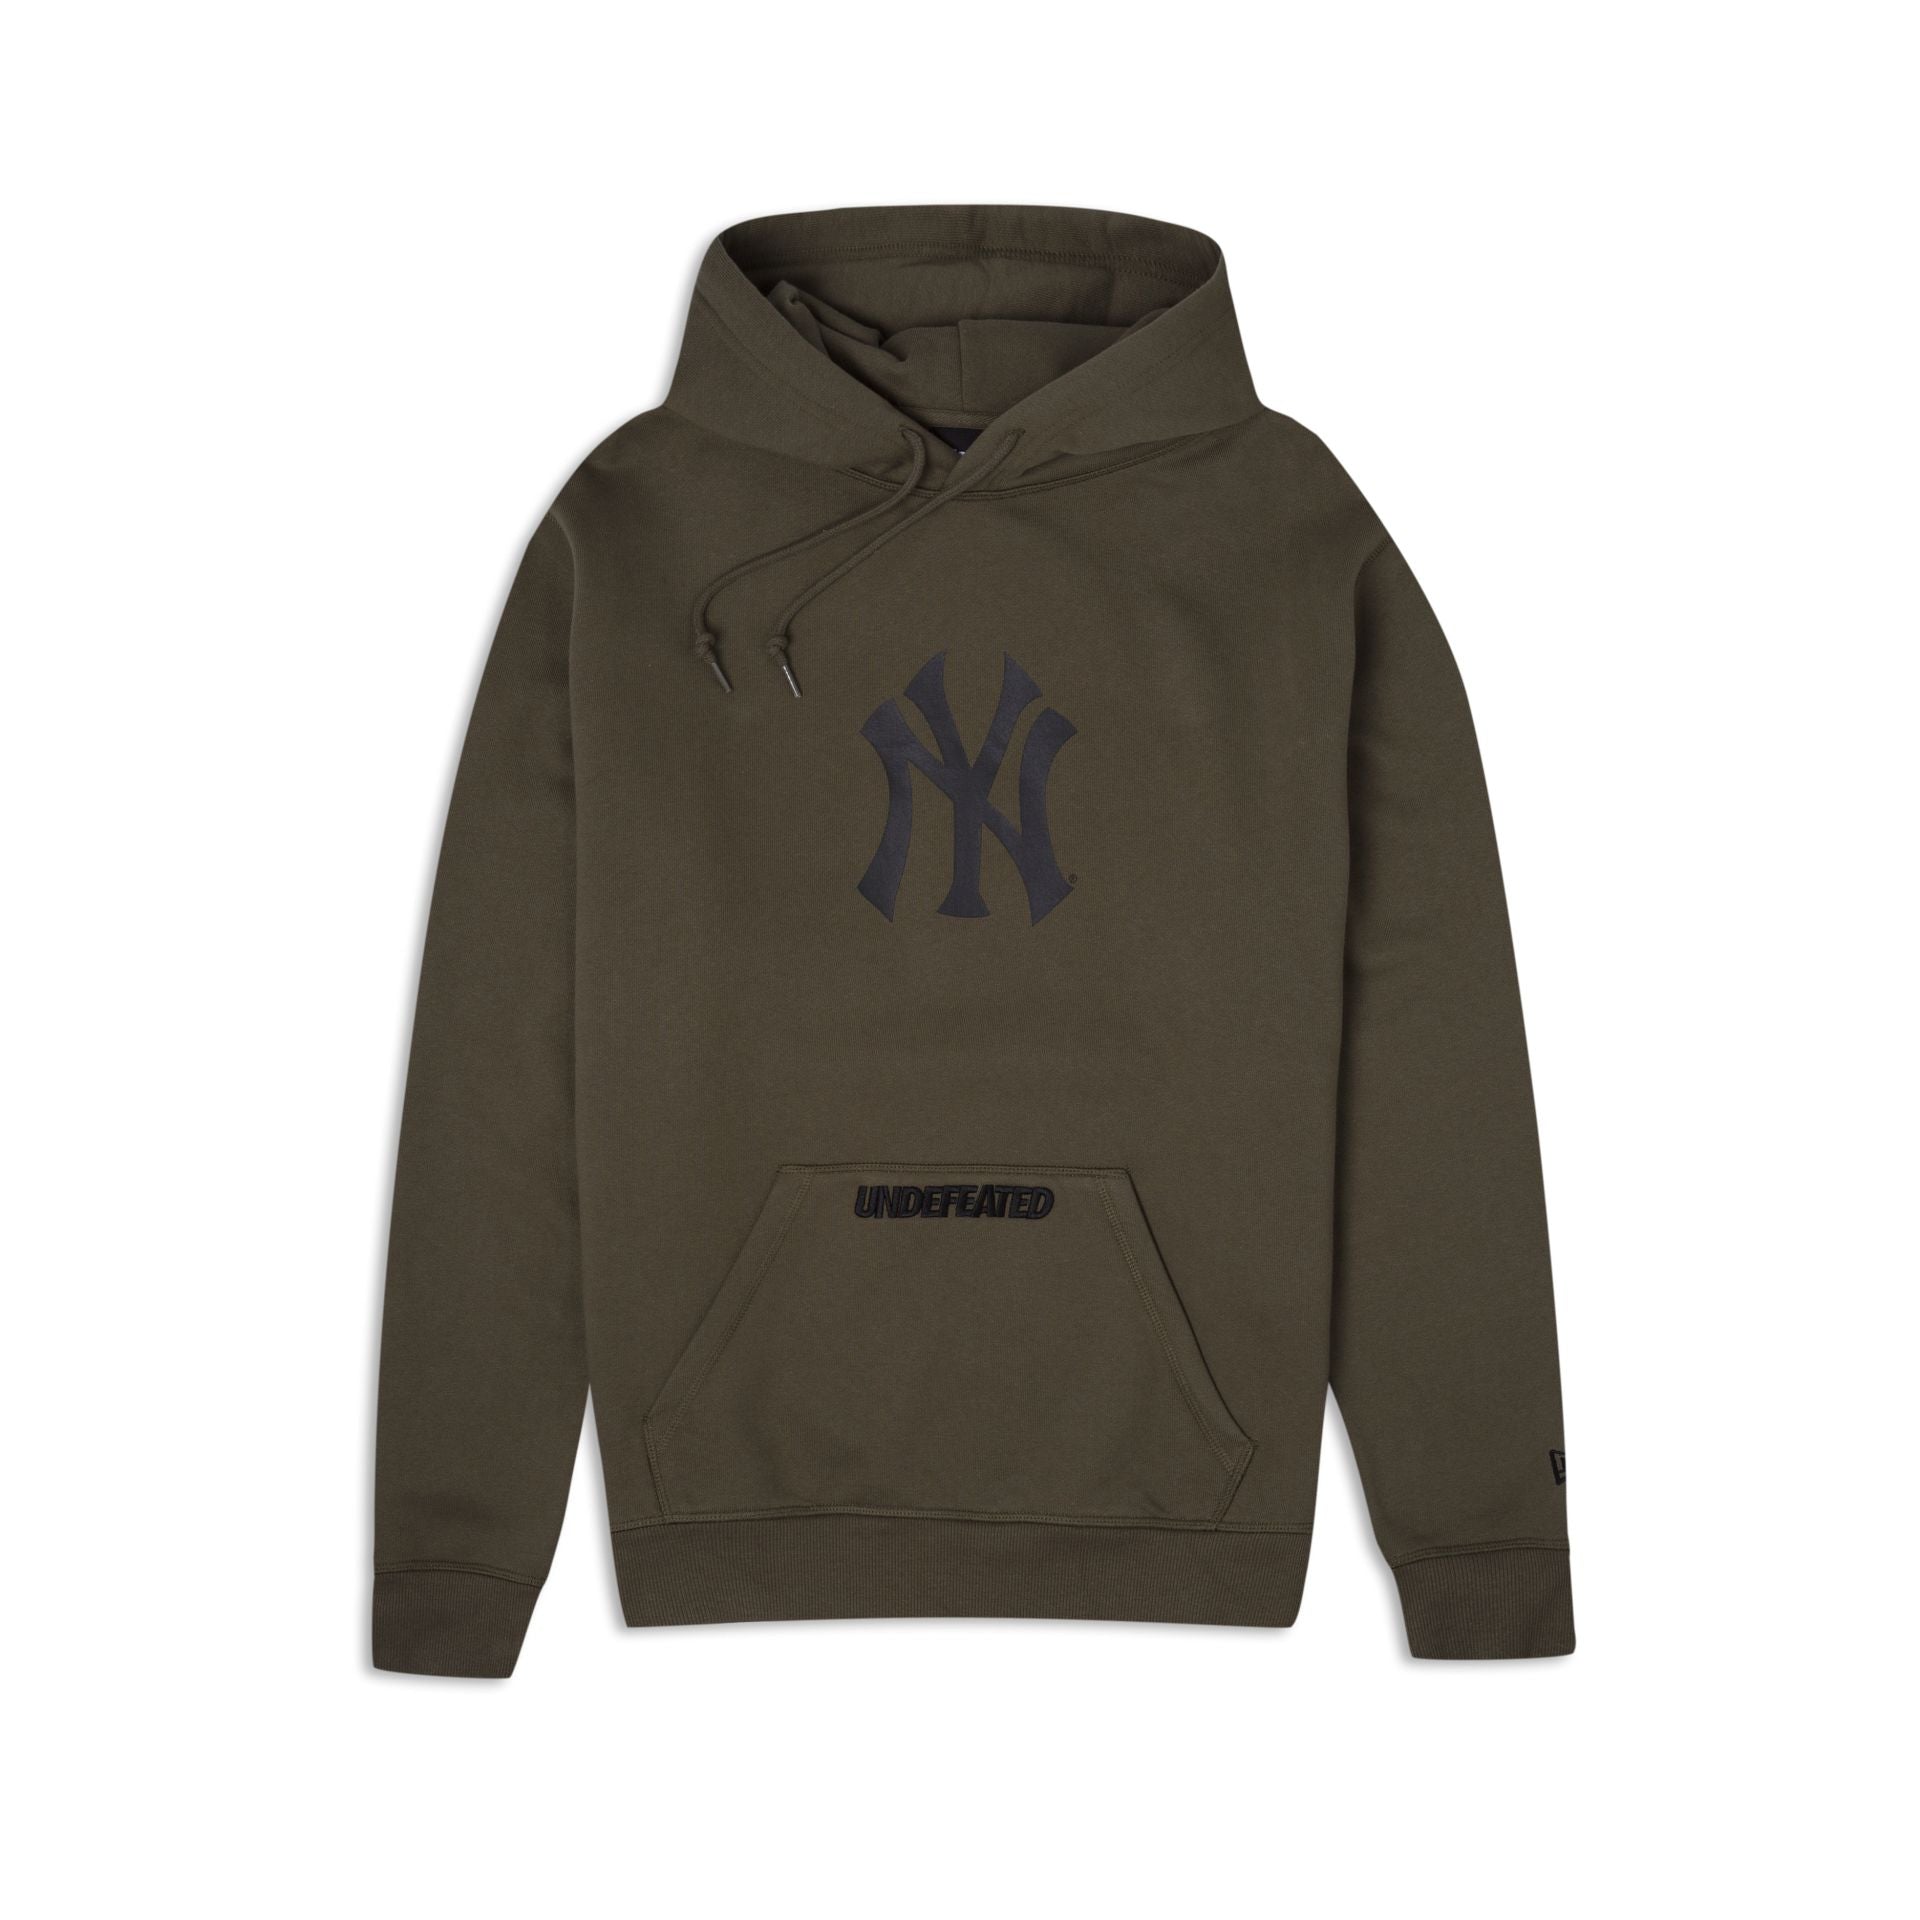 New Era New York Yankees Logo Sweatshirt, green and white